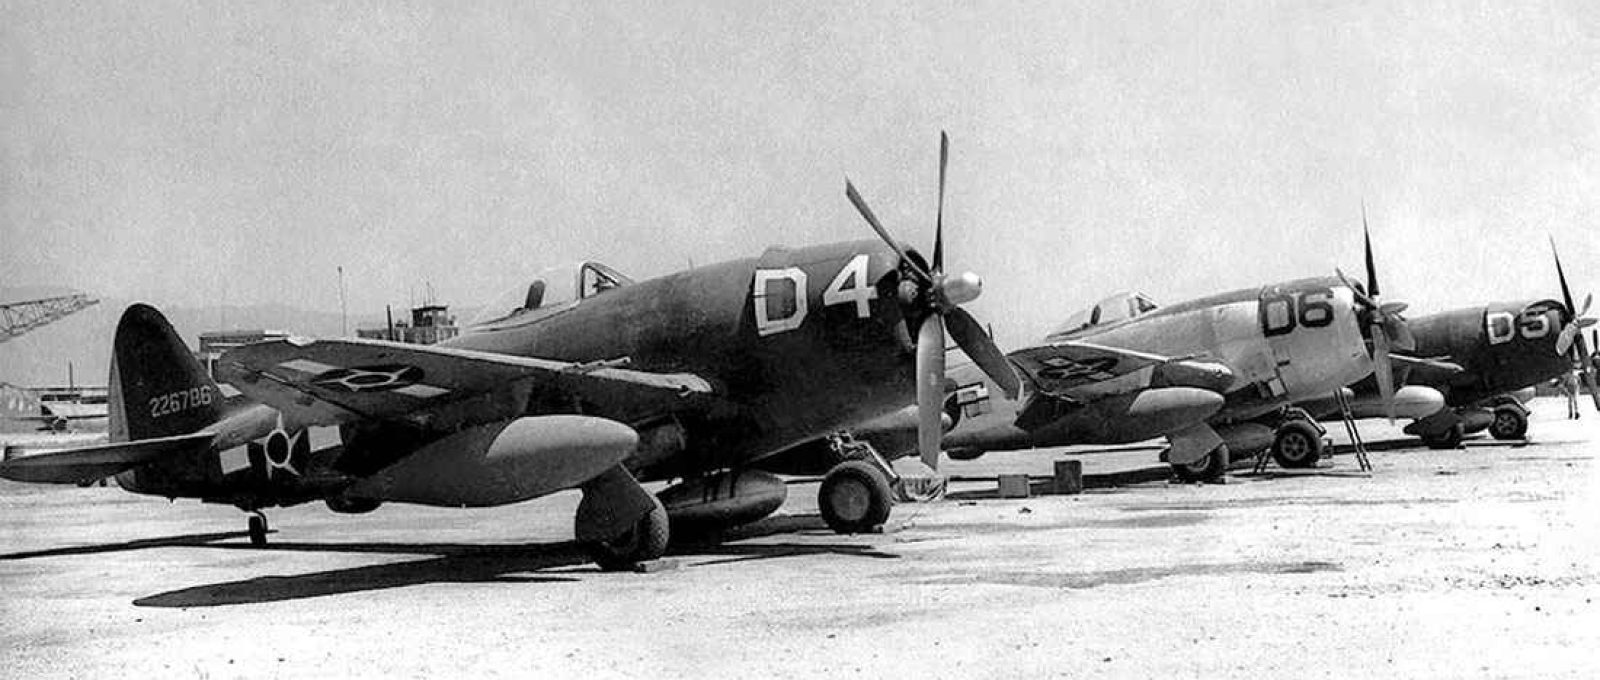 A Força Aérea Brasileira operou um total de 94 caças P-47 Thunderbolt, dos quais 62 estiveram na Itália. Nesta imagem, aeronaves da Esquadrilha Verde, identificada pela letra “D” (FAB).